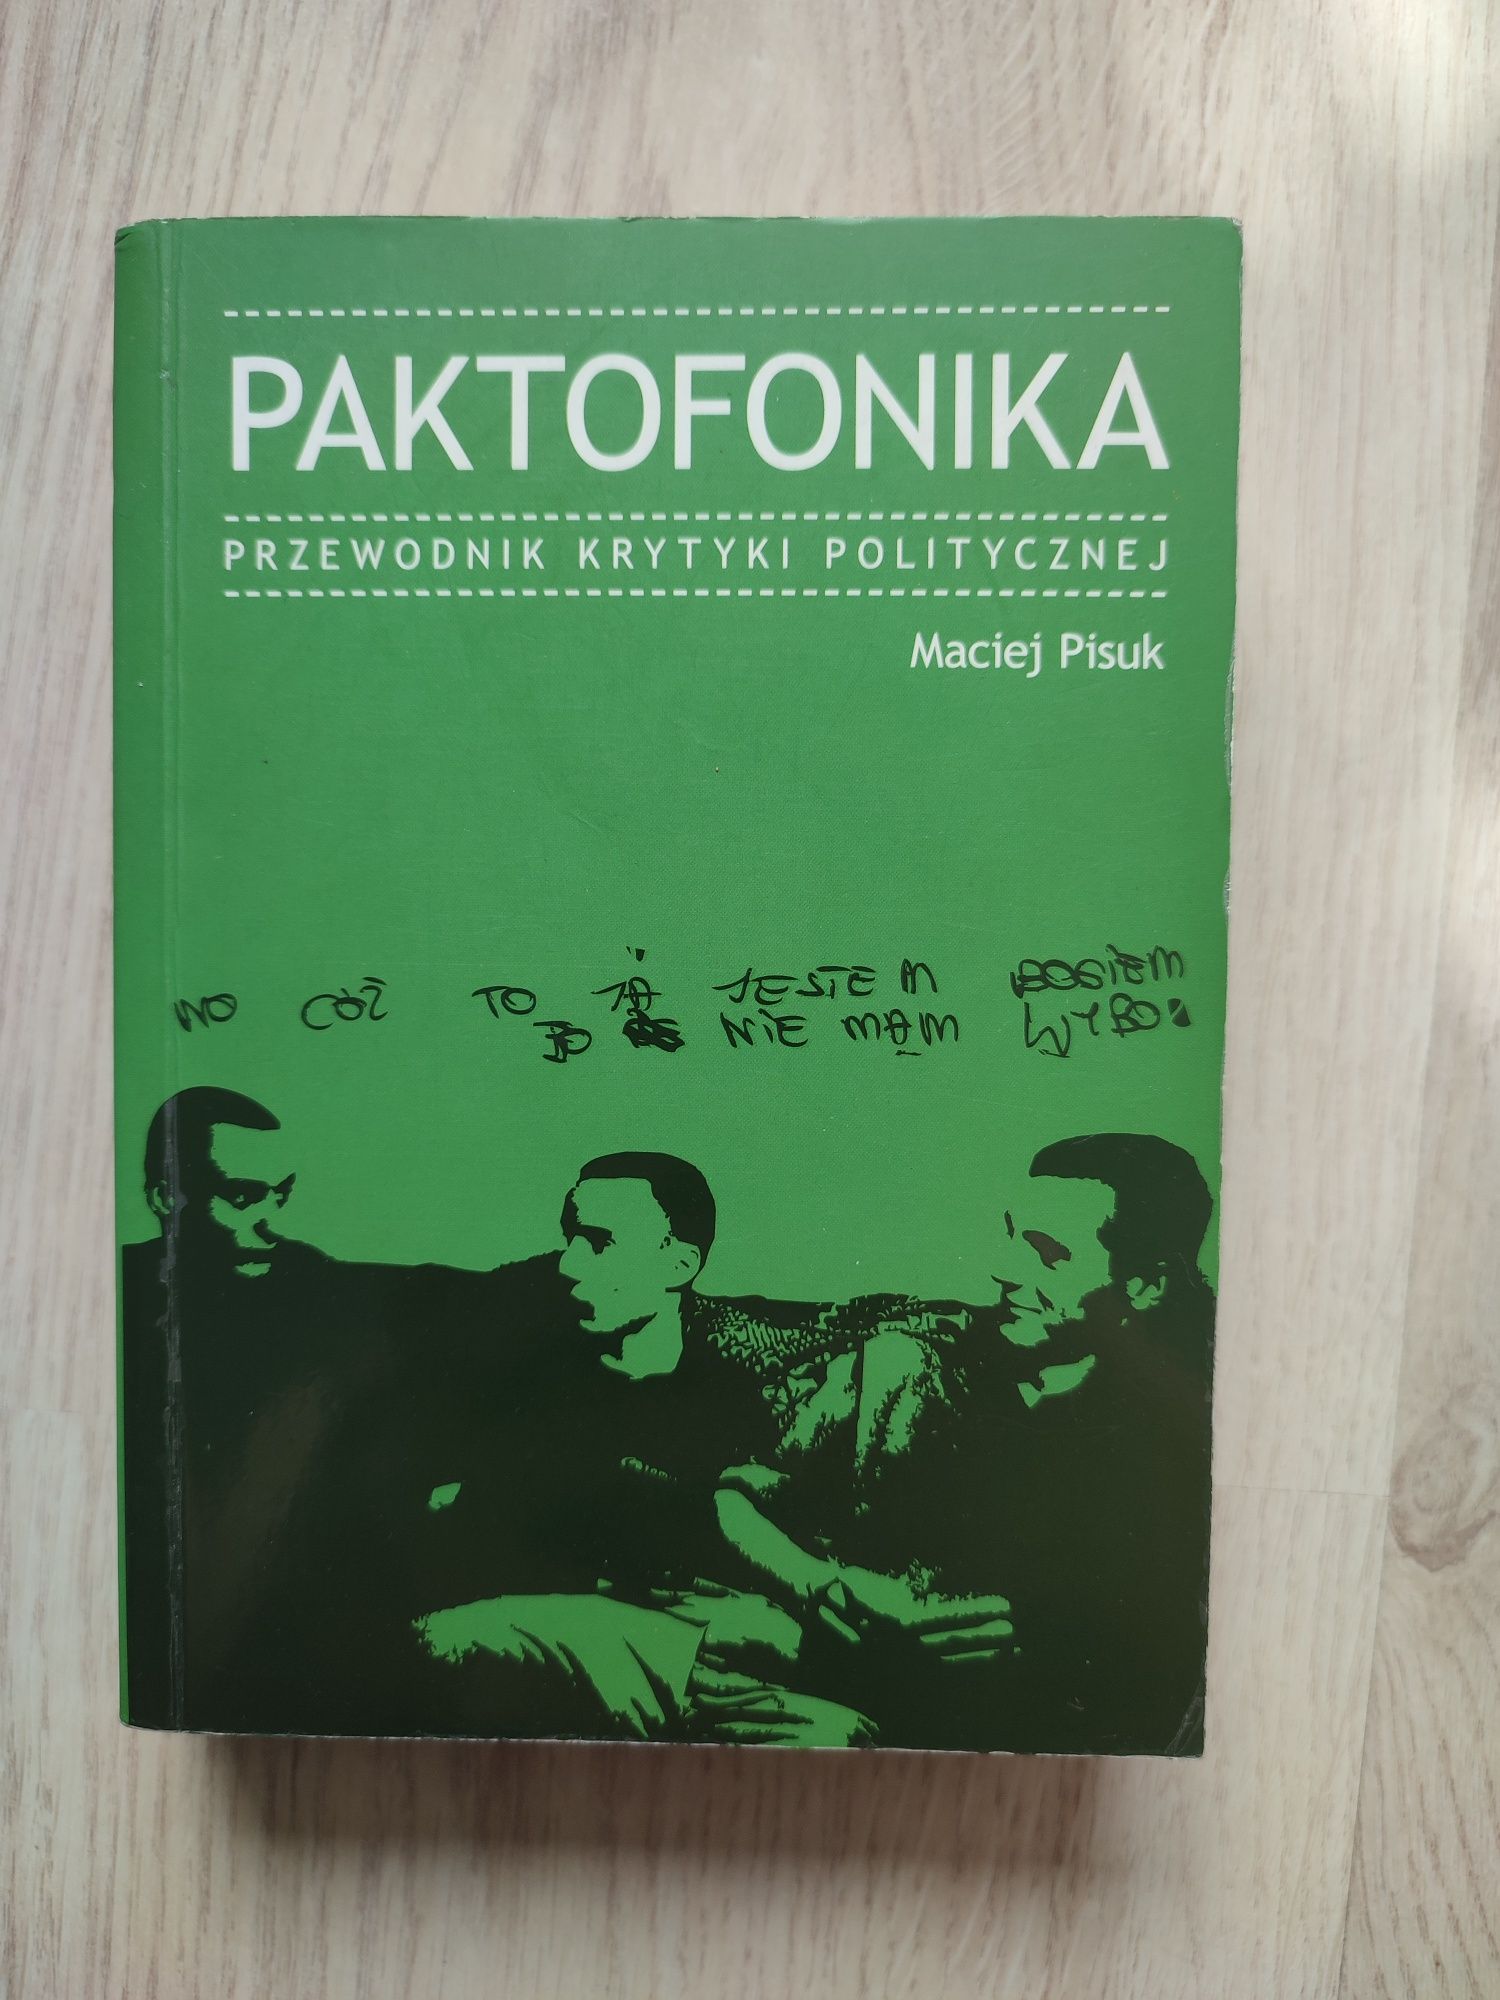 Paktofonika przewodnik krytyki politycznej Maciej Pisuk